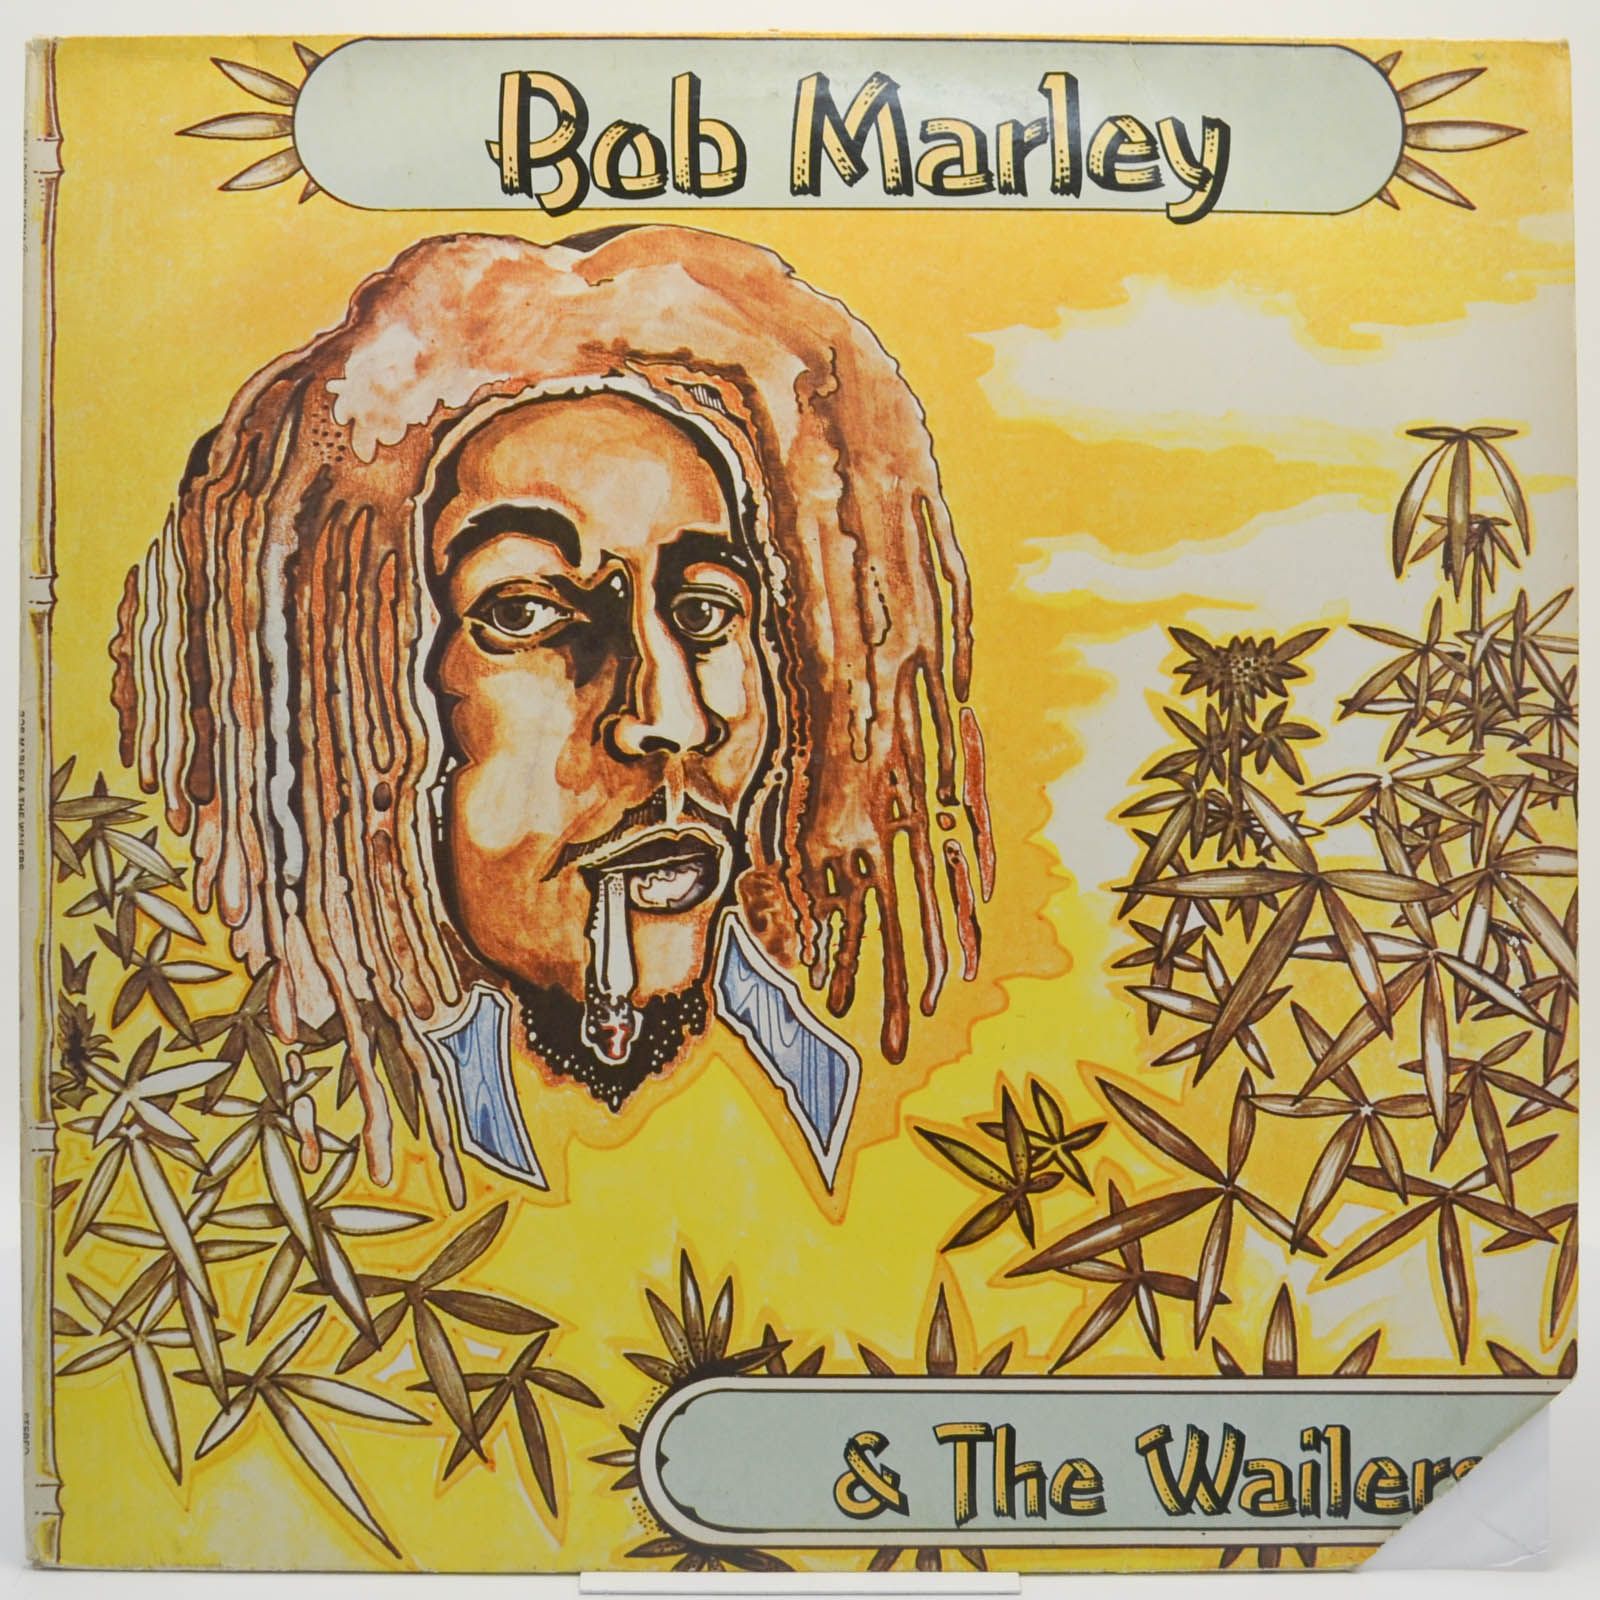 Bob Marley & The Wailers — Bob Marley & The Wailers, 1978